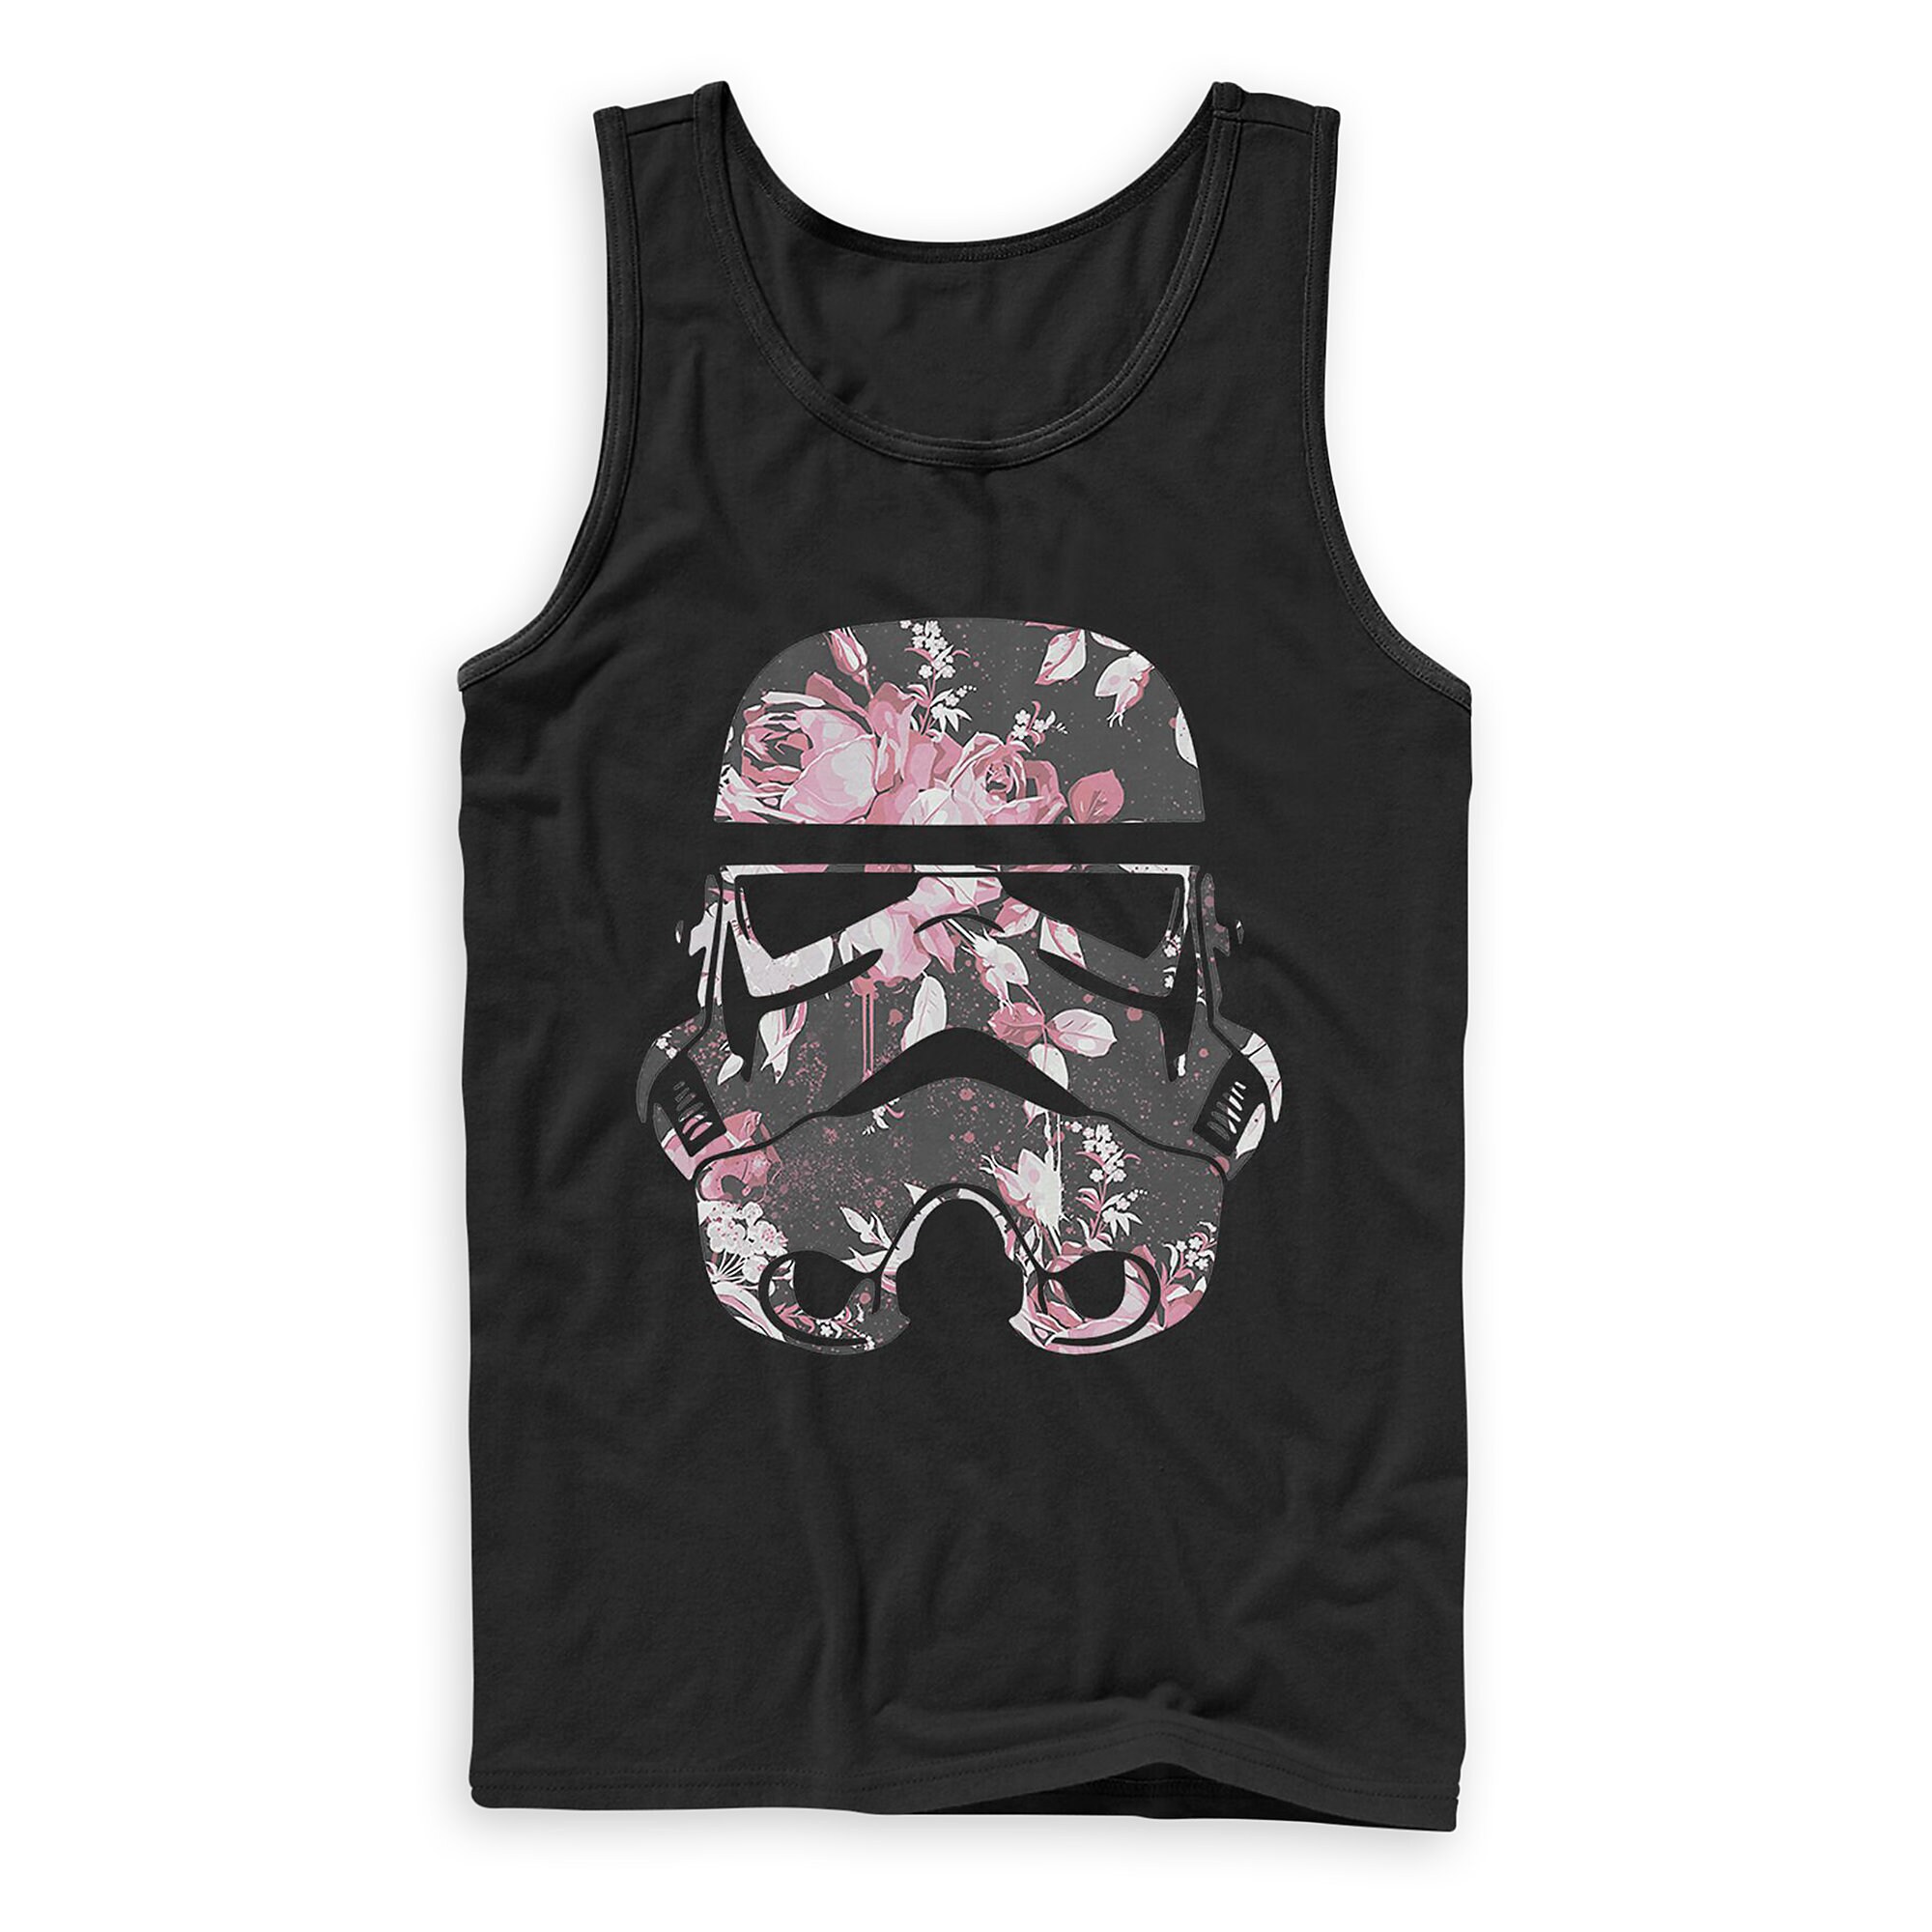 Stormtrooper Floral Tank Top for Men - Star Wars